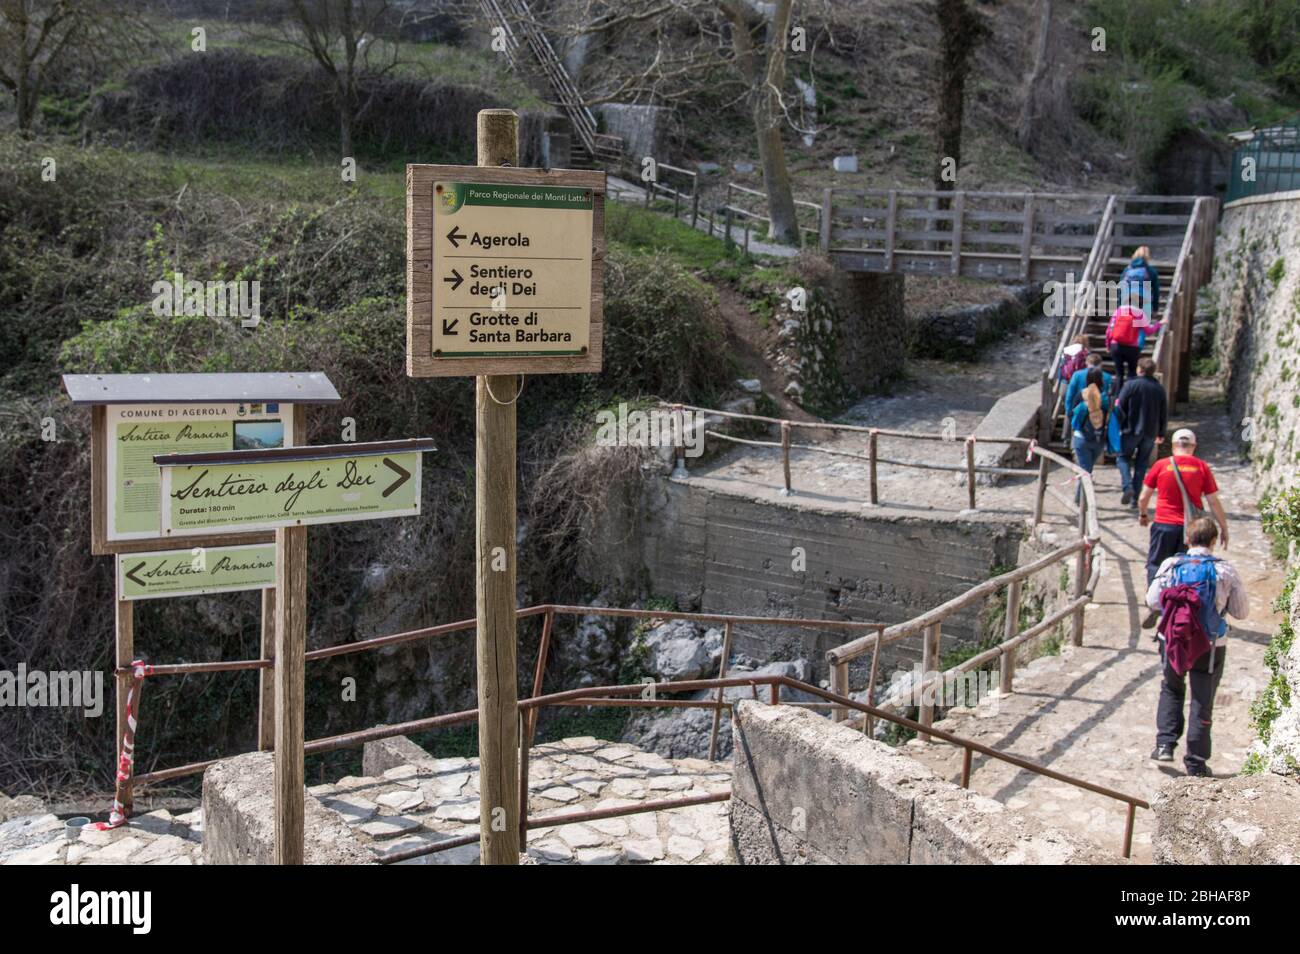 La via degli dei: Sentiero degli dei. Incredibile sentiero escursionistico, alto sulla Costiera Amalfitana o Amalfi in Italia, da Agerola a Positano. Marzo 2019. Diversi escursionisti all'inizio del tour Foto Stock